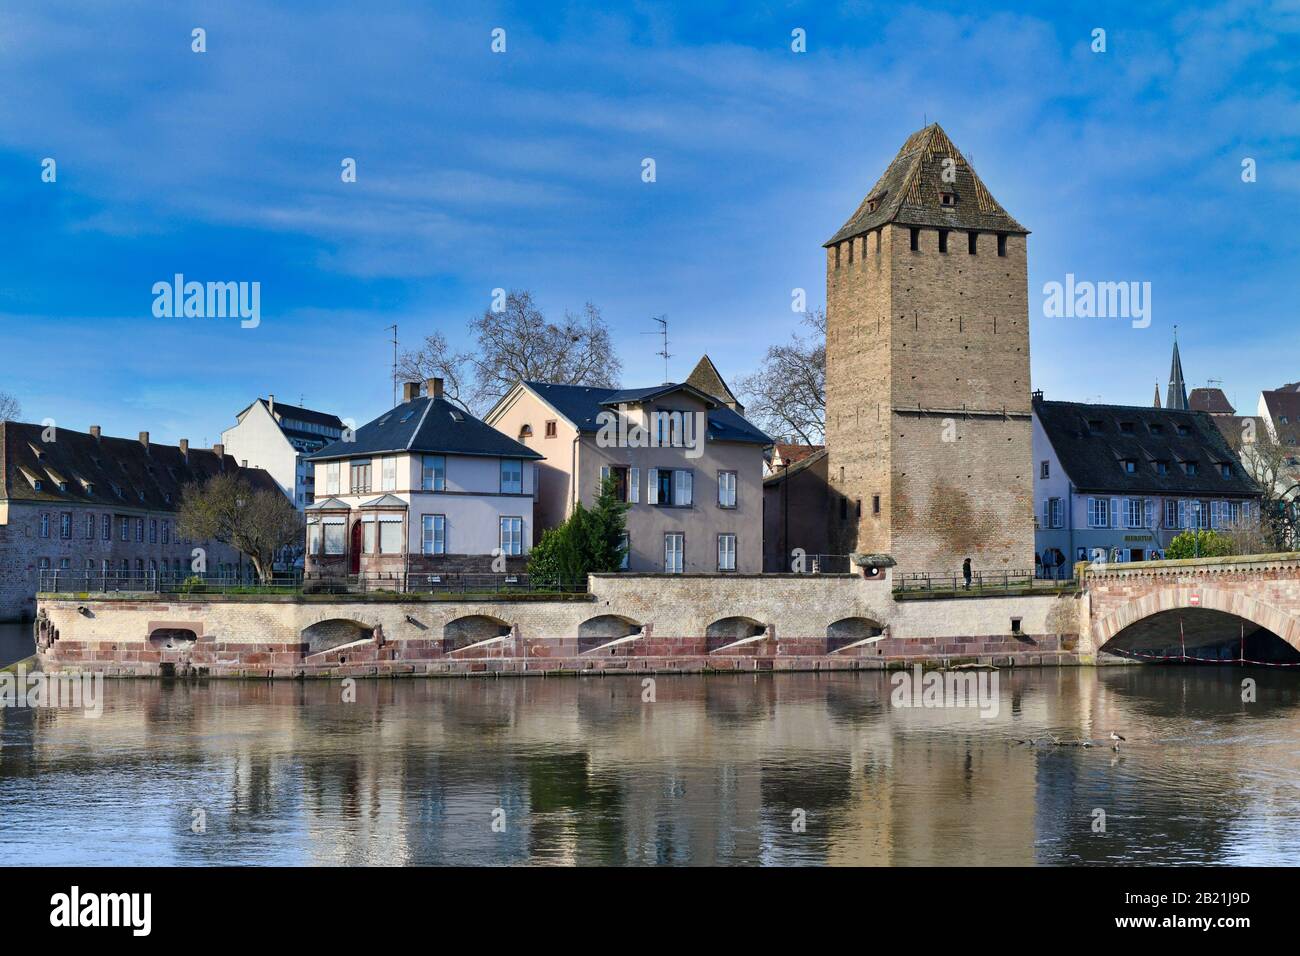 Historischer Turm der Brücke "Ponts Coumt" im Rahmen von Verteidigungsarbeiten an der Ill im Viertel "Petite France" in Strasbbourg, Frankreich Stockfoto